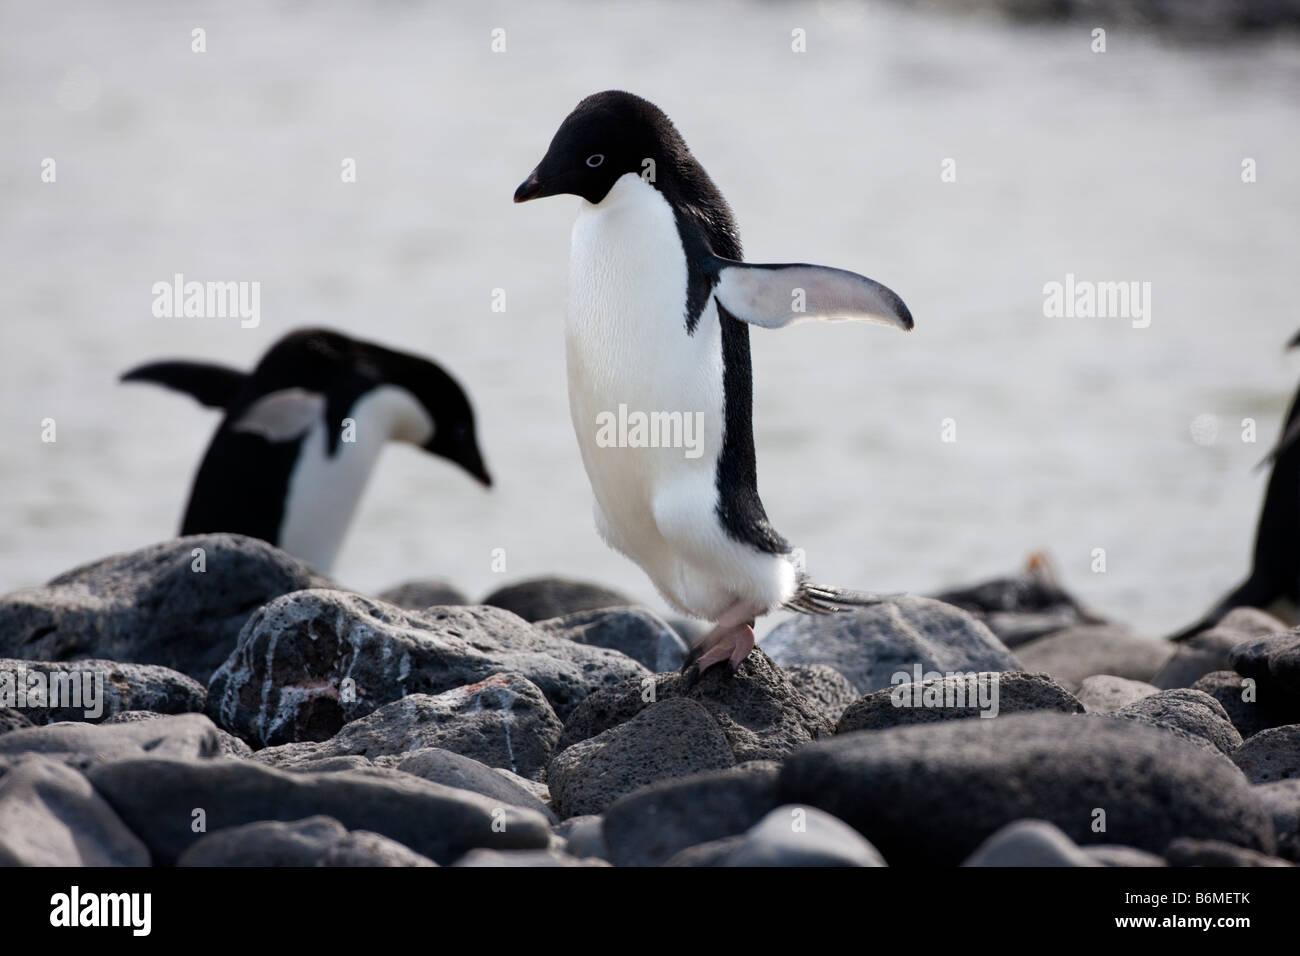 2 pingouins Adélie (Pygoscelis adeliae) saute au-dessus de roches sur la plage rocheuse ailes Antarctique profondeur de champ à l'action stop close up Banque D'Images